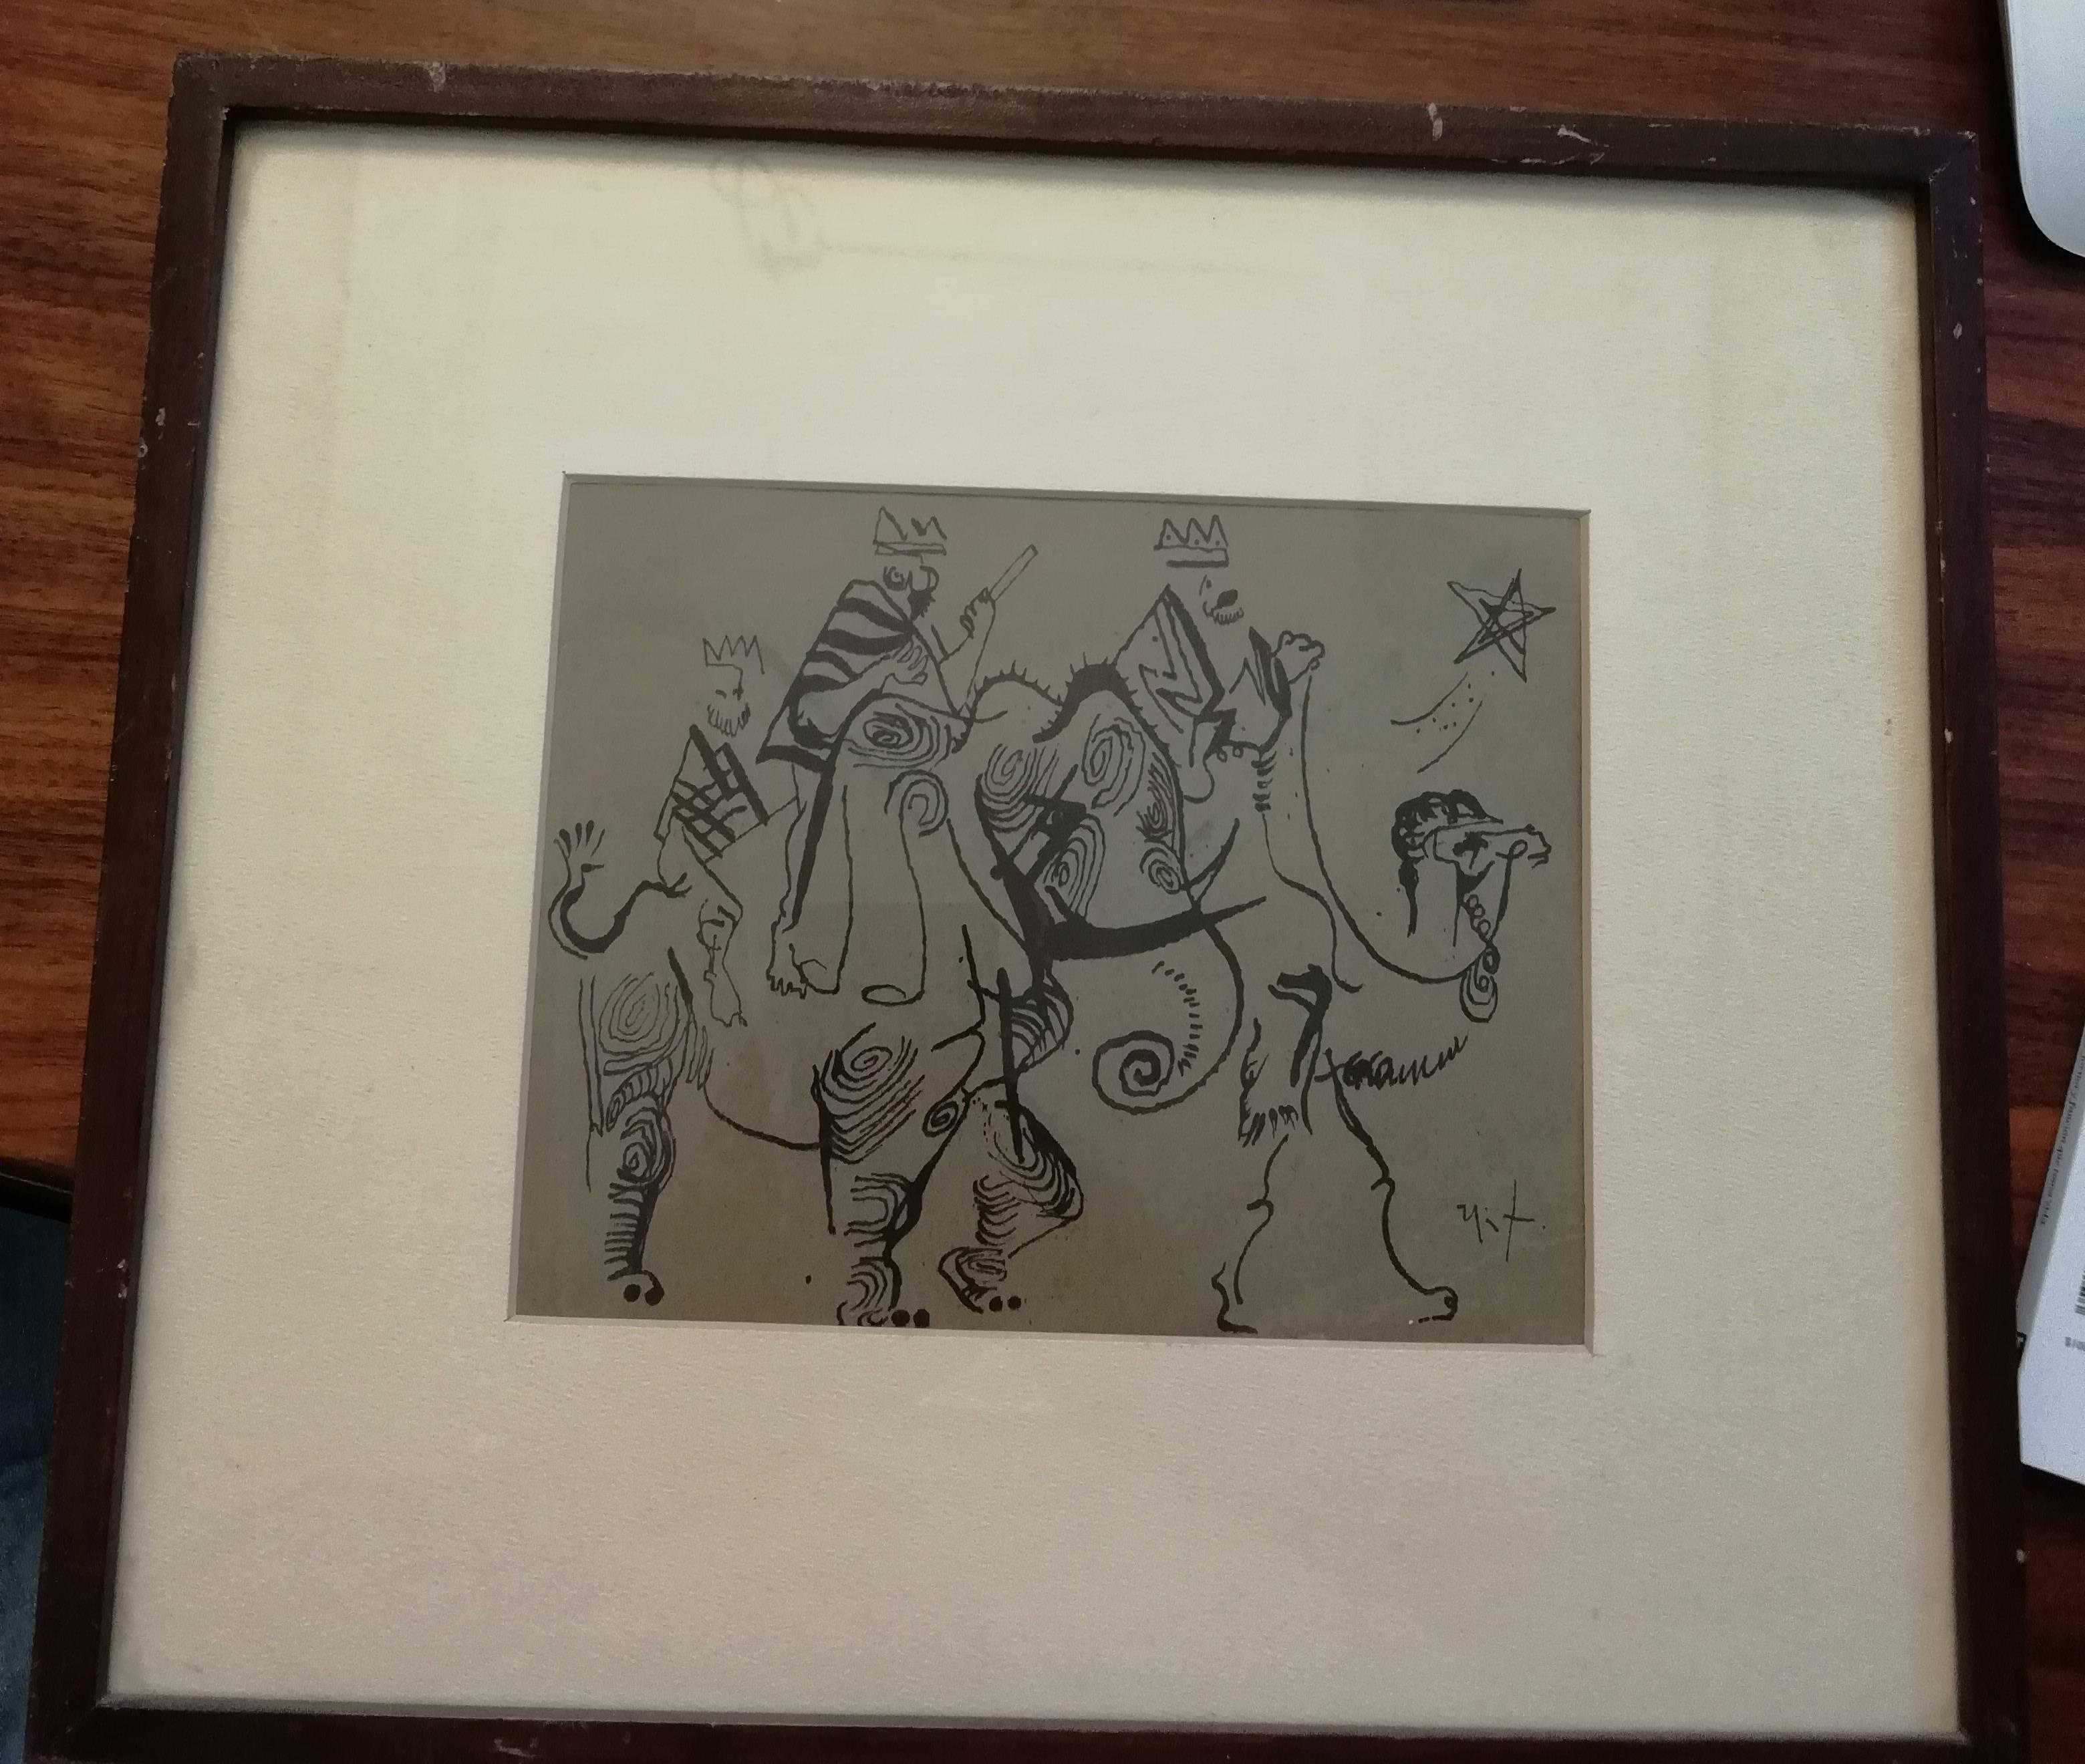 Un beau dessin à l'encre sur papier représentant les trois sages par l'artiste mexicain Rodolfo Nieto, vers 1970. Le dessin a un cadre en bois et un passe-partout beige.

Signé en bas à droite.

Dimensions du dessin : 15 x 19 cm. (6 x 7,5